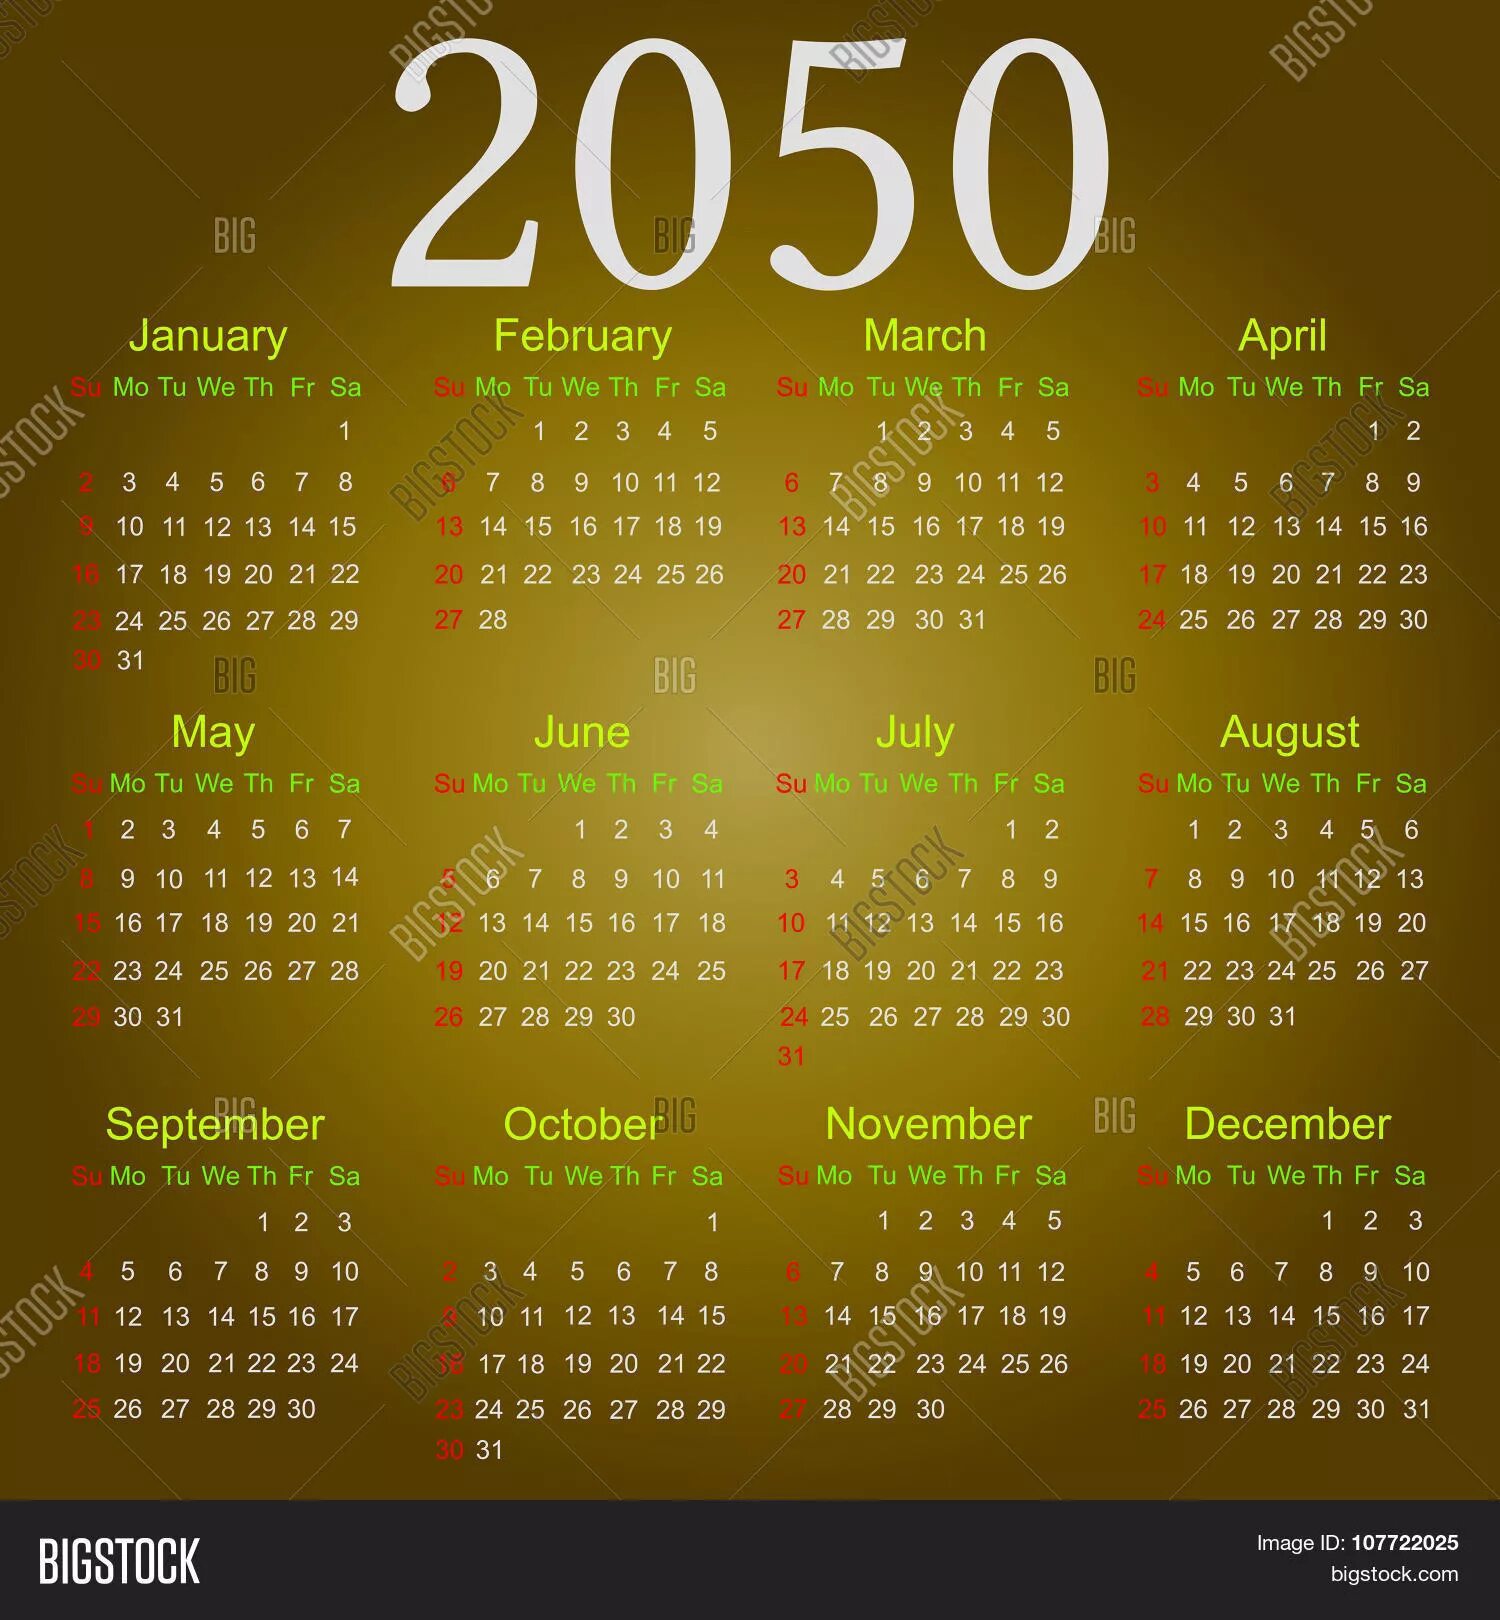 Календарь 2050 года. Календарь 2033 года. Календарь 2033 года по месяцам. Календарь 2050 года на русском.